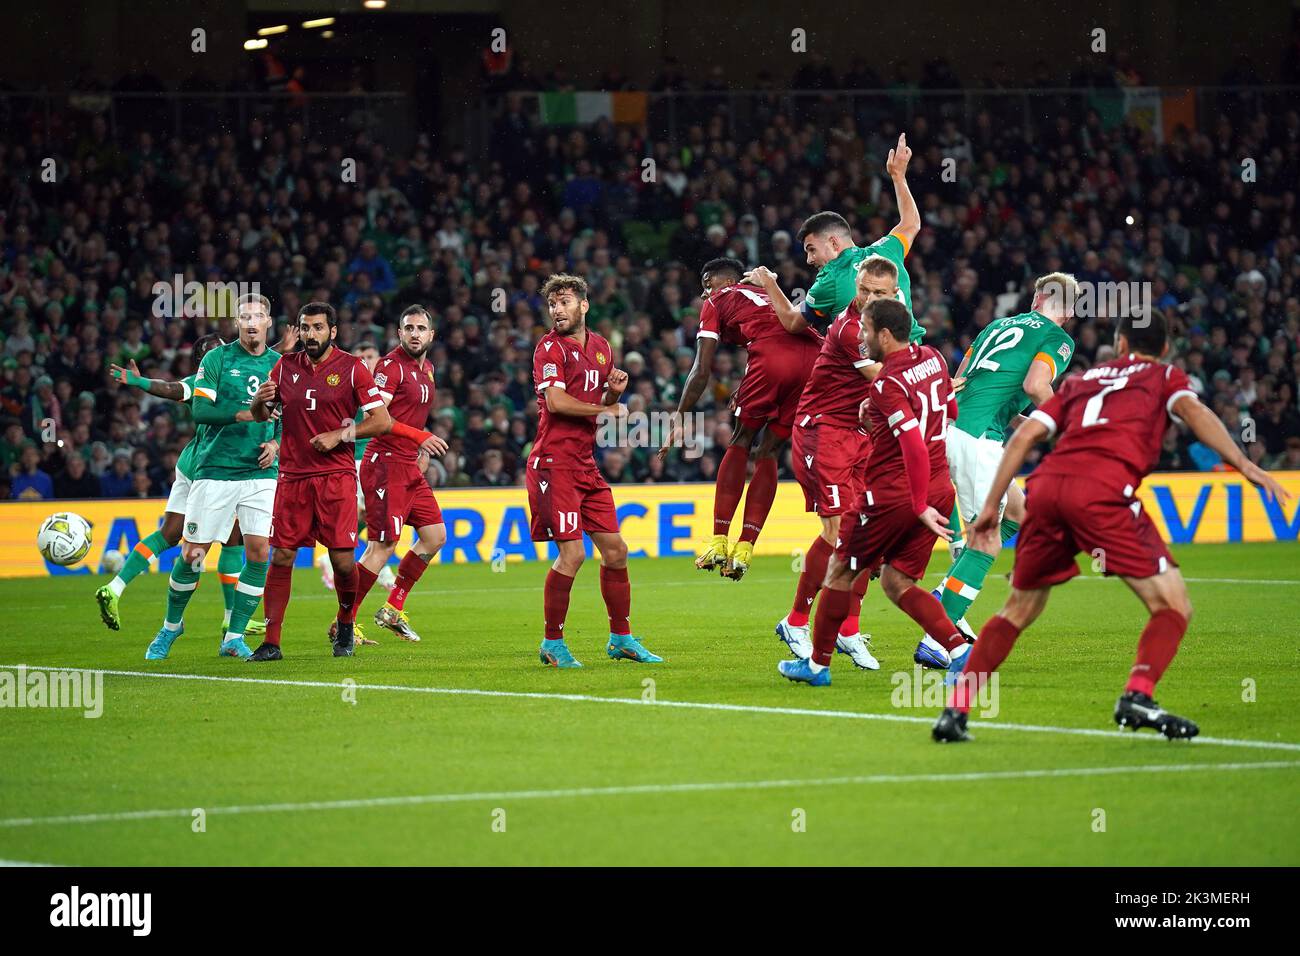 John Egan, de la República de Irlanda, marca el primer gol de su equipo durante el partido de la Liga de las Naciones de la UEFA en el Estadio Aviva en Dublín, Irlanda. Fecha de la foto: Martes 27 de septiembre de 2022. Foto de stock